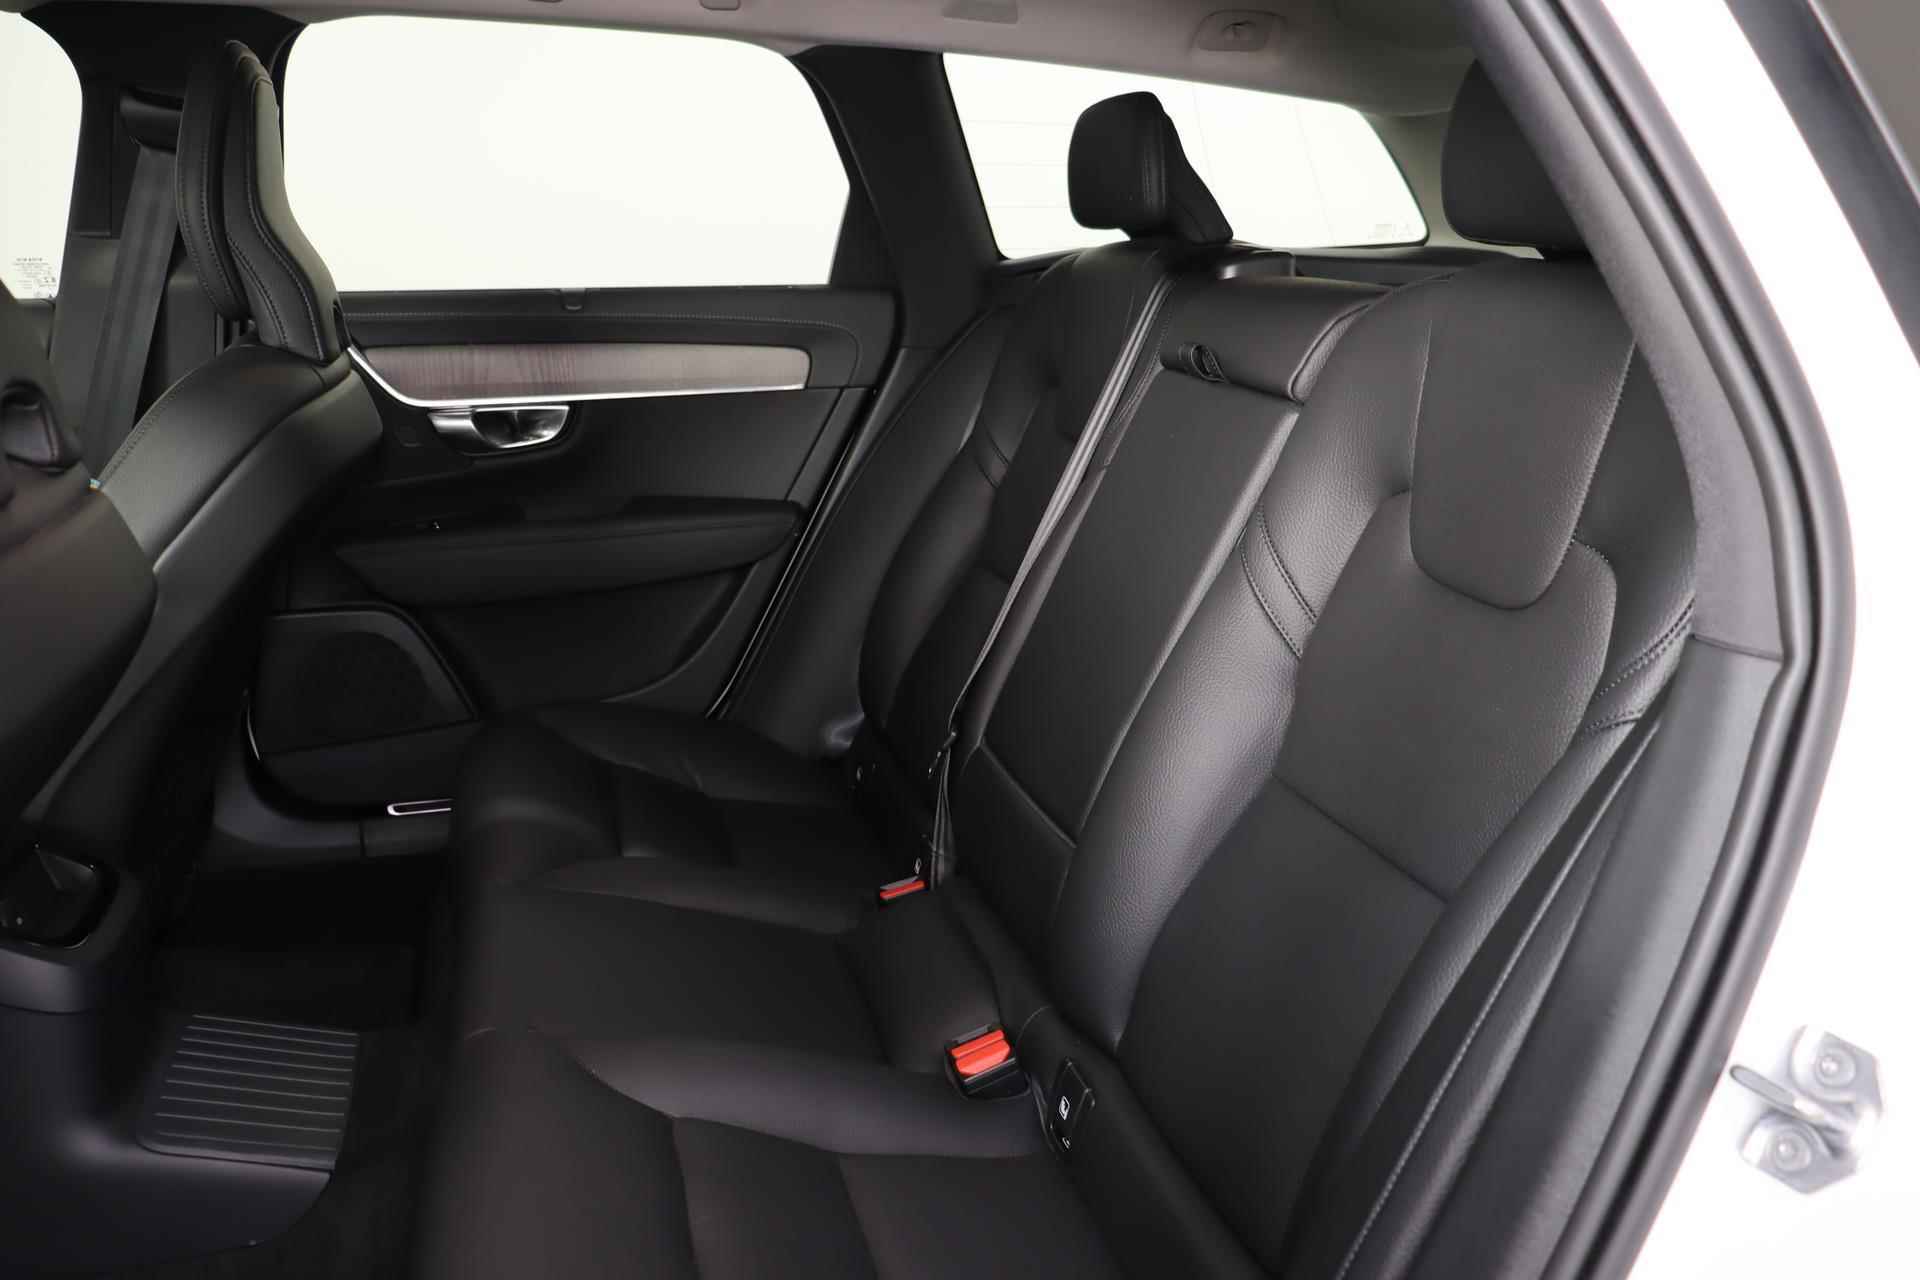 Volvo V90 T6 AWD Recharge Inscription - Panorama/schuifdak - IntelliSafe Assist & Surround - Harman/Kardon audio - Adaptieve LED koplampen - Parkeercamera achter - Verwarmde voorstoelen & stuur - Parkeersensoren voor & achter - Elektr. bedienb. voorstoelen met geheugen - Standkachel - 19' LMV - 29/33